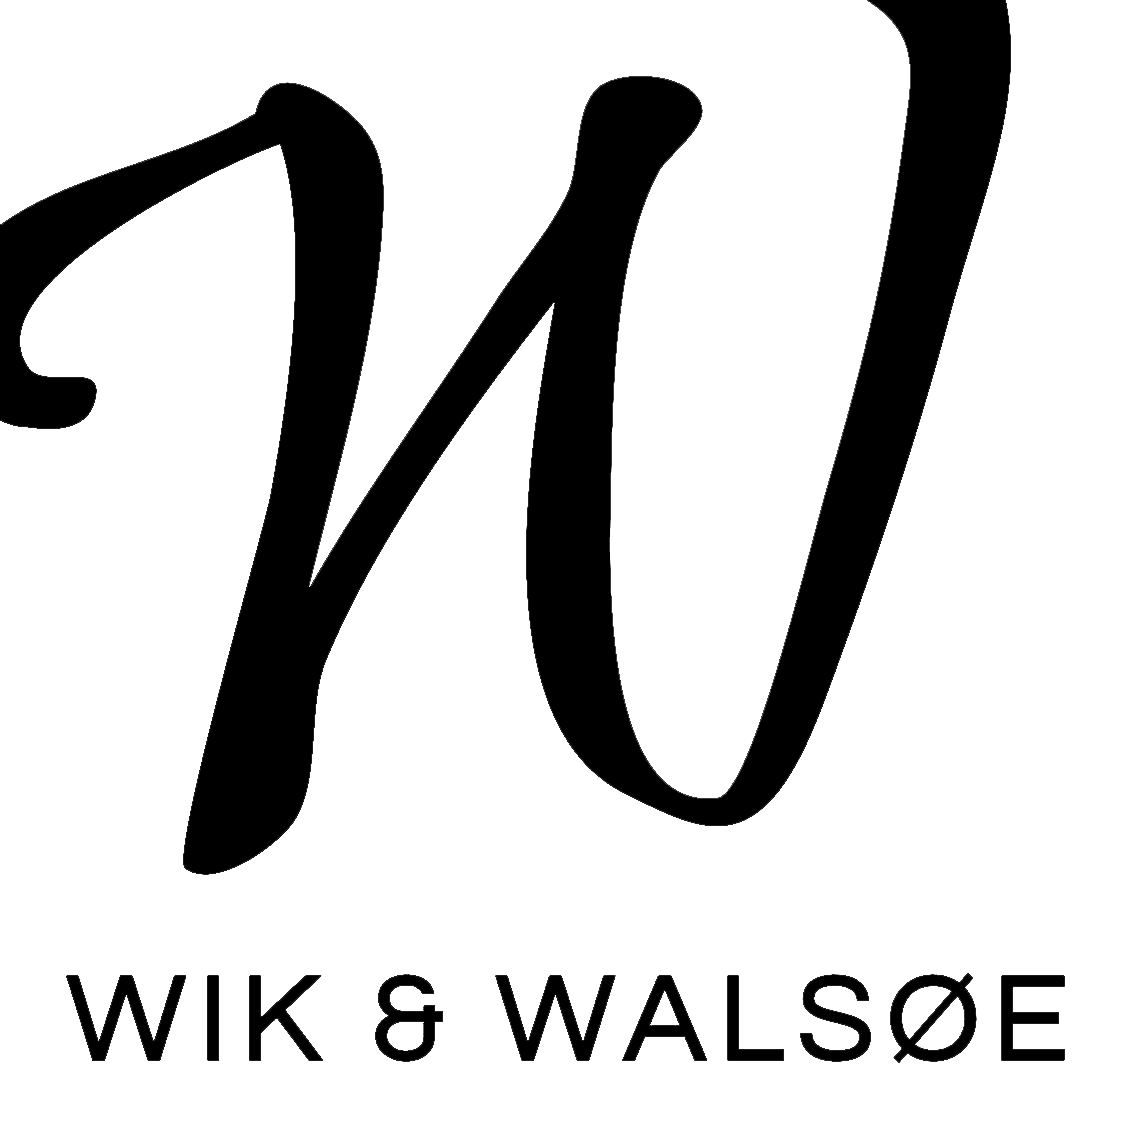 Wik & Walsoe logo